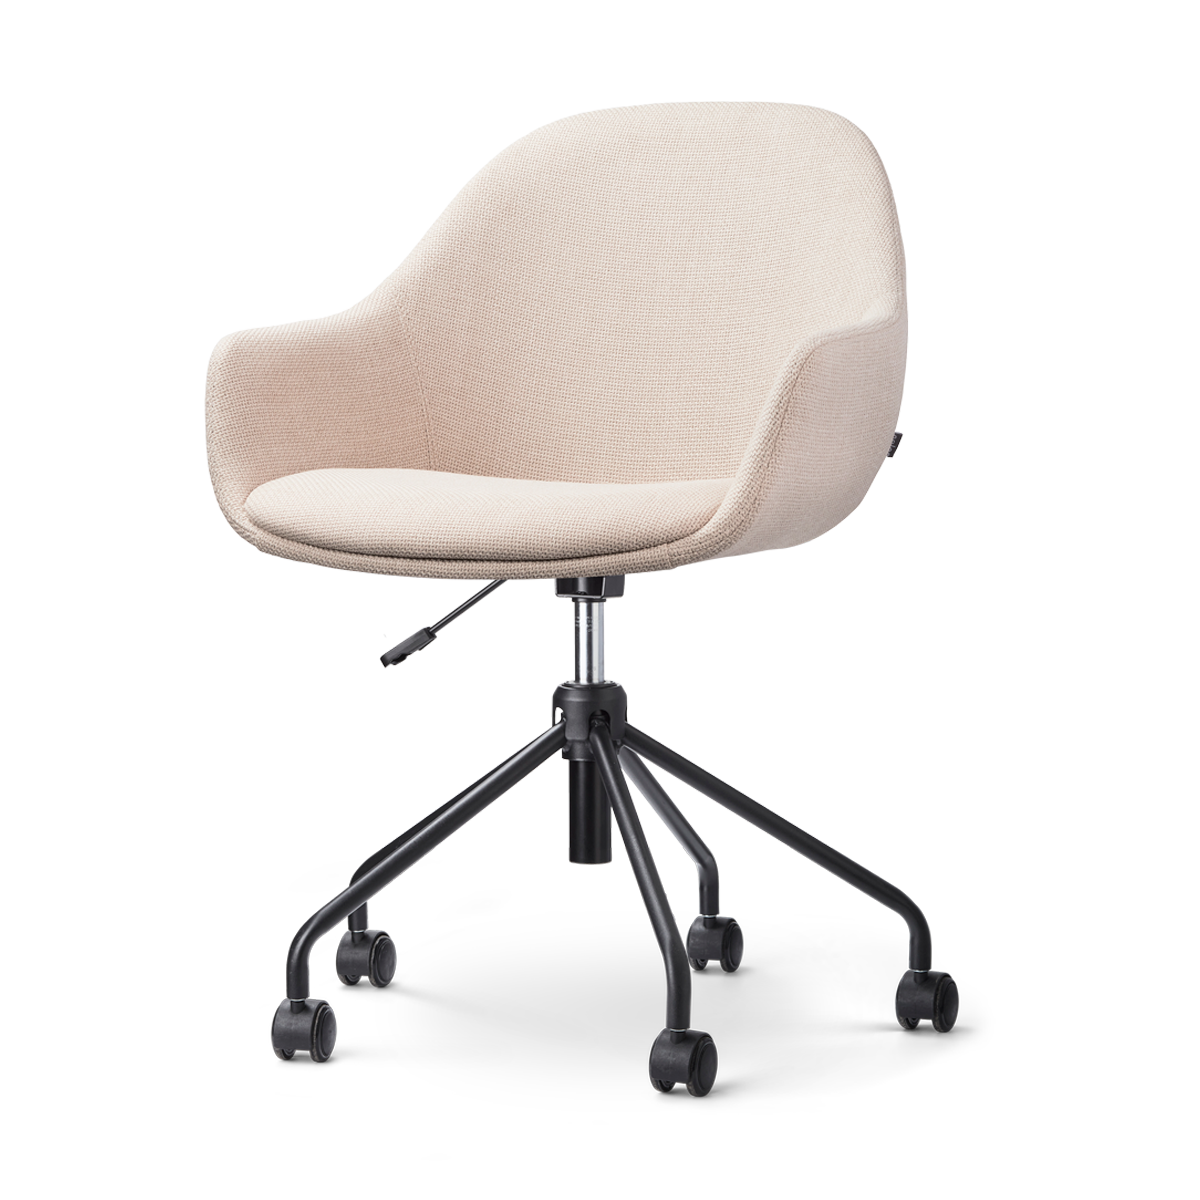 Nout-Mae bureaustoel beige - zwart onderstel